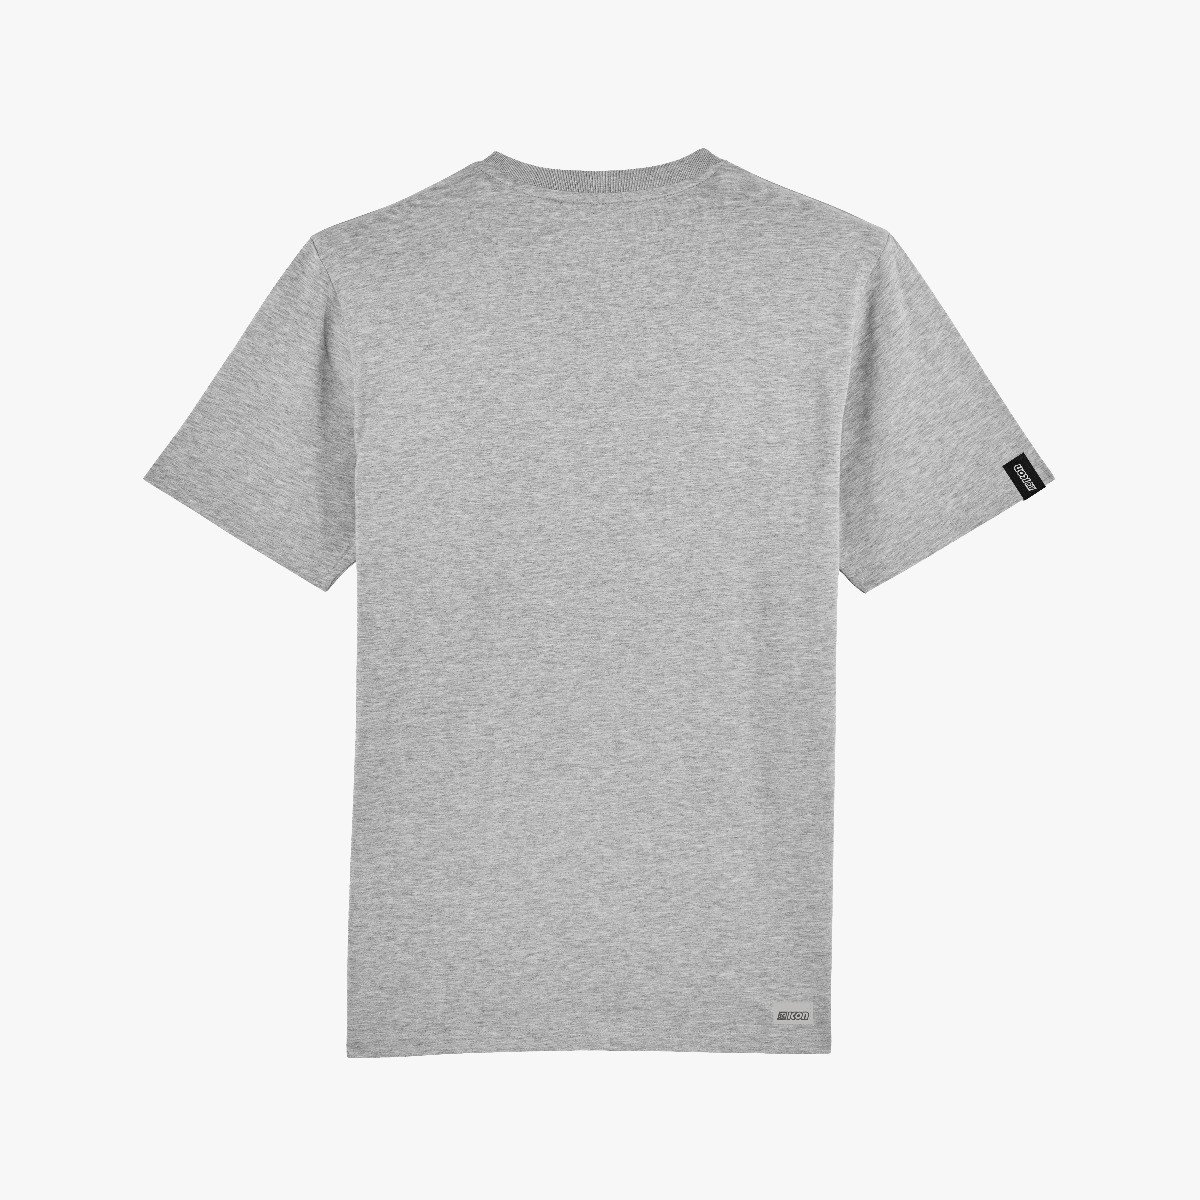 Scicon Sports | Lifestyle Cotton Scicon 80 T-shirt - grey - TS61894
